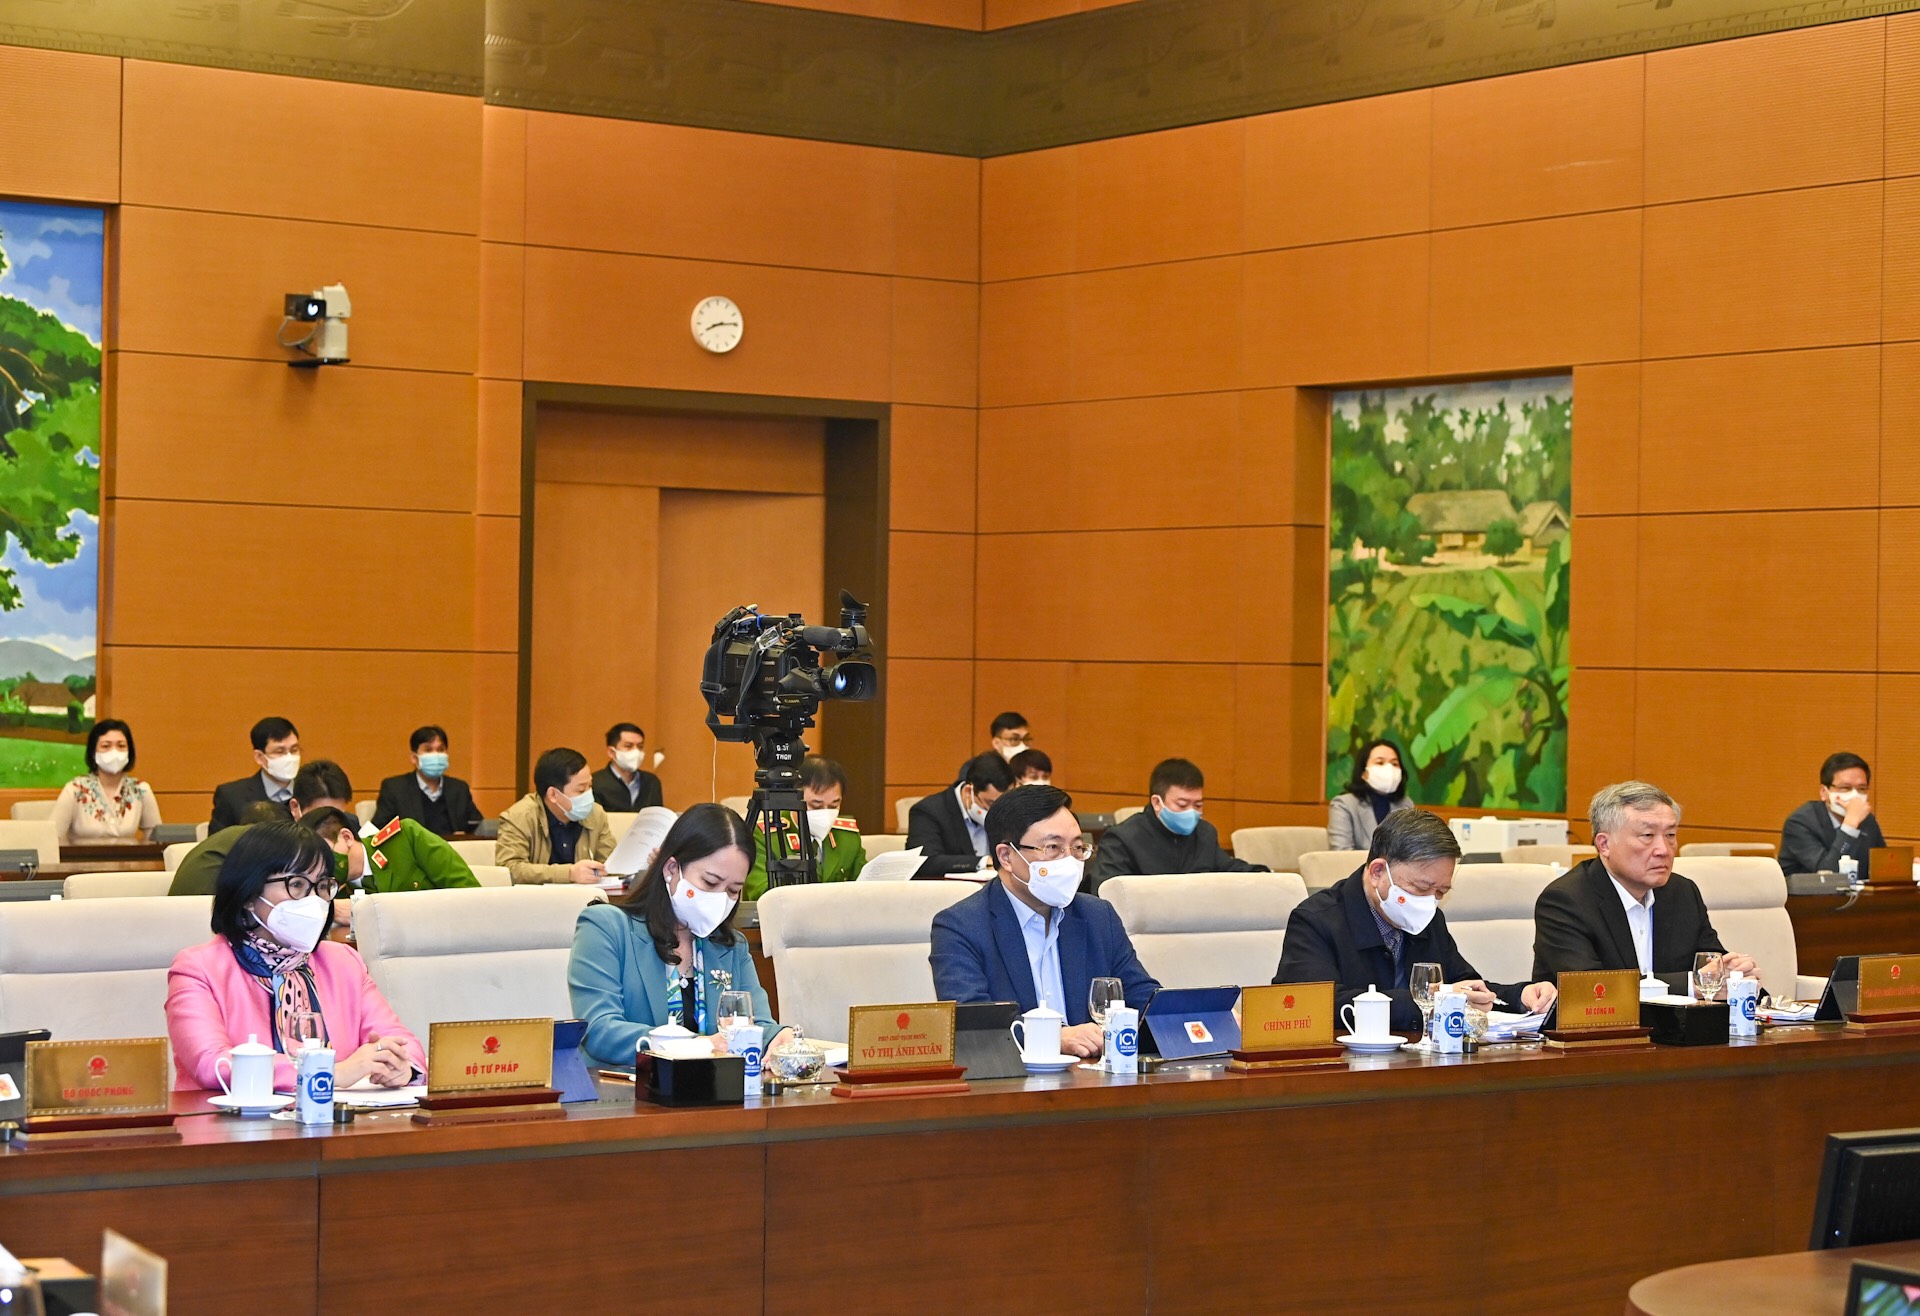 Bảo đảm hoàn thành phiên họp thứ 8 của Ủy ban Thường vụ Quốc hội với chất lượng cao nhất - Ảnh 2.